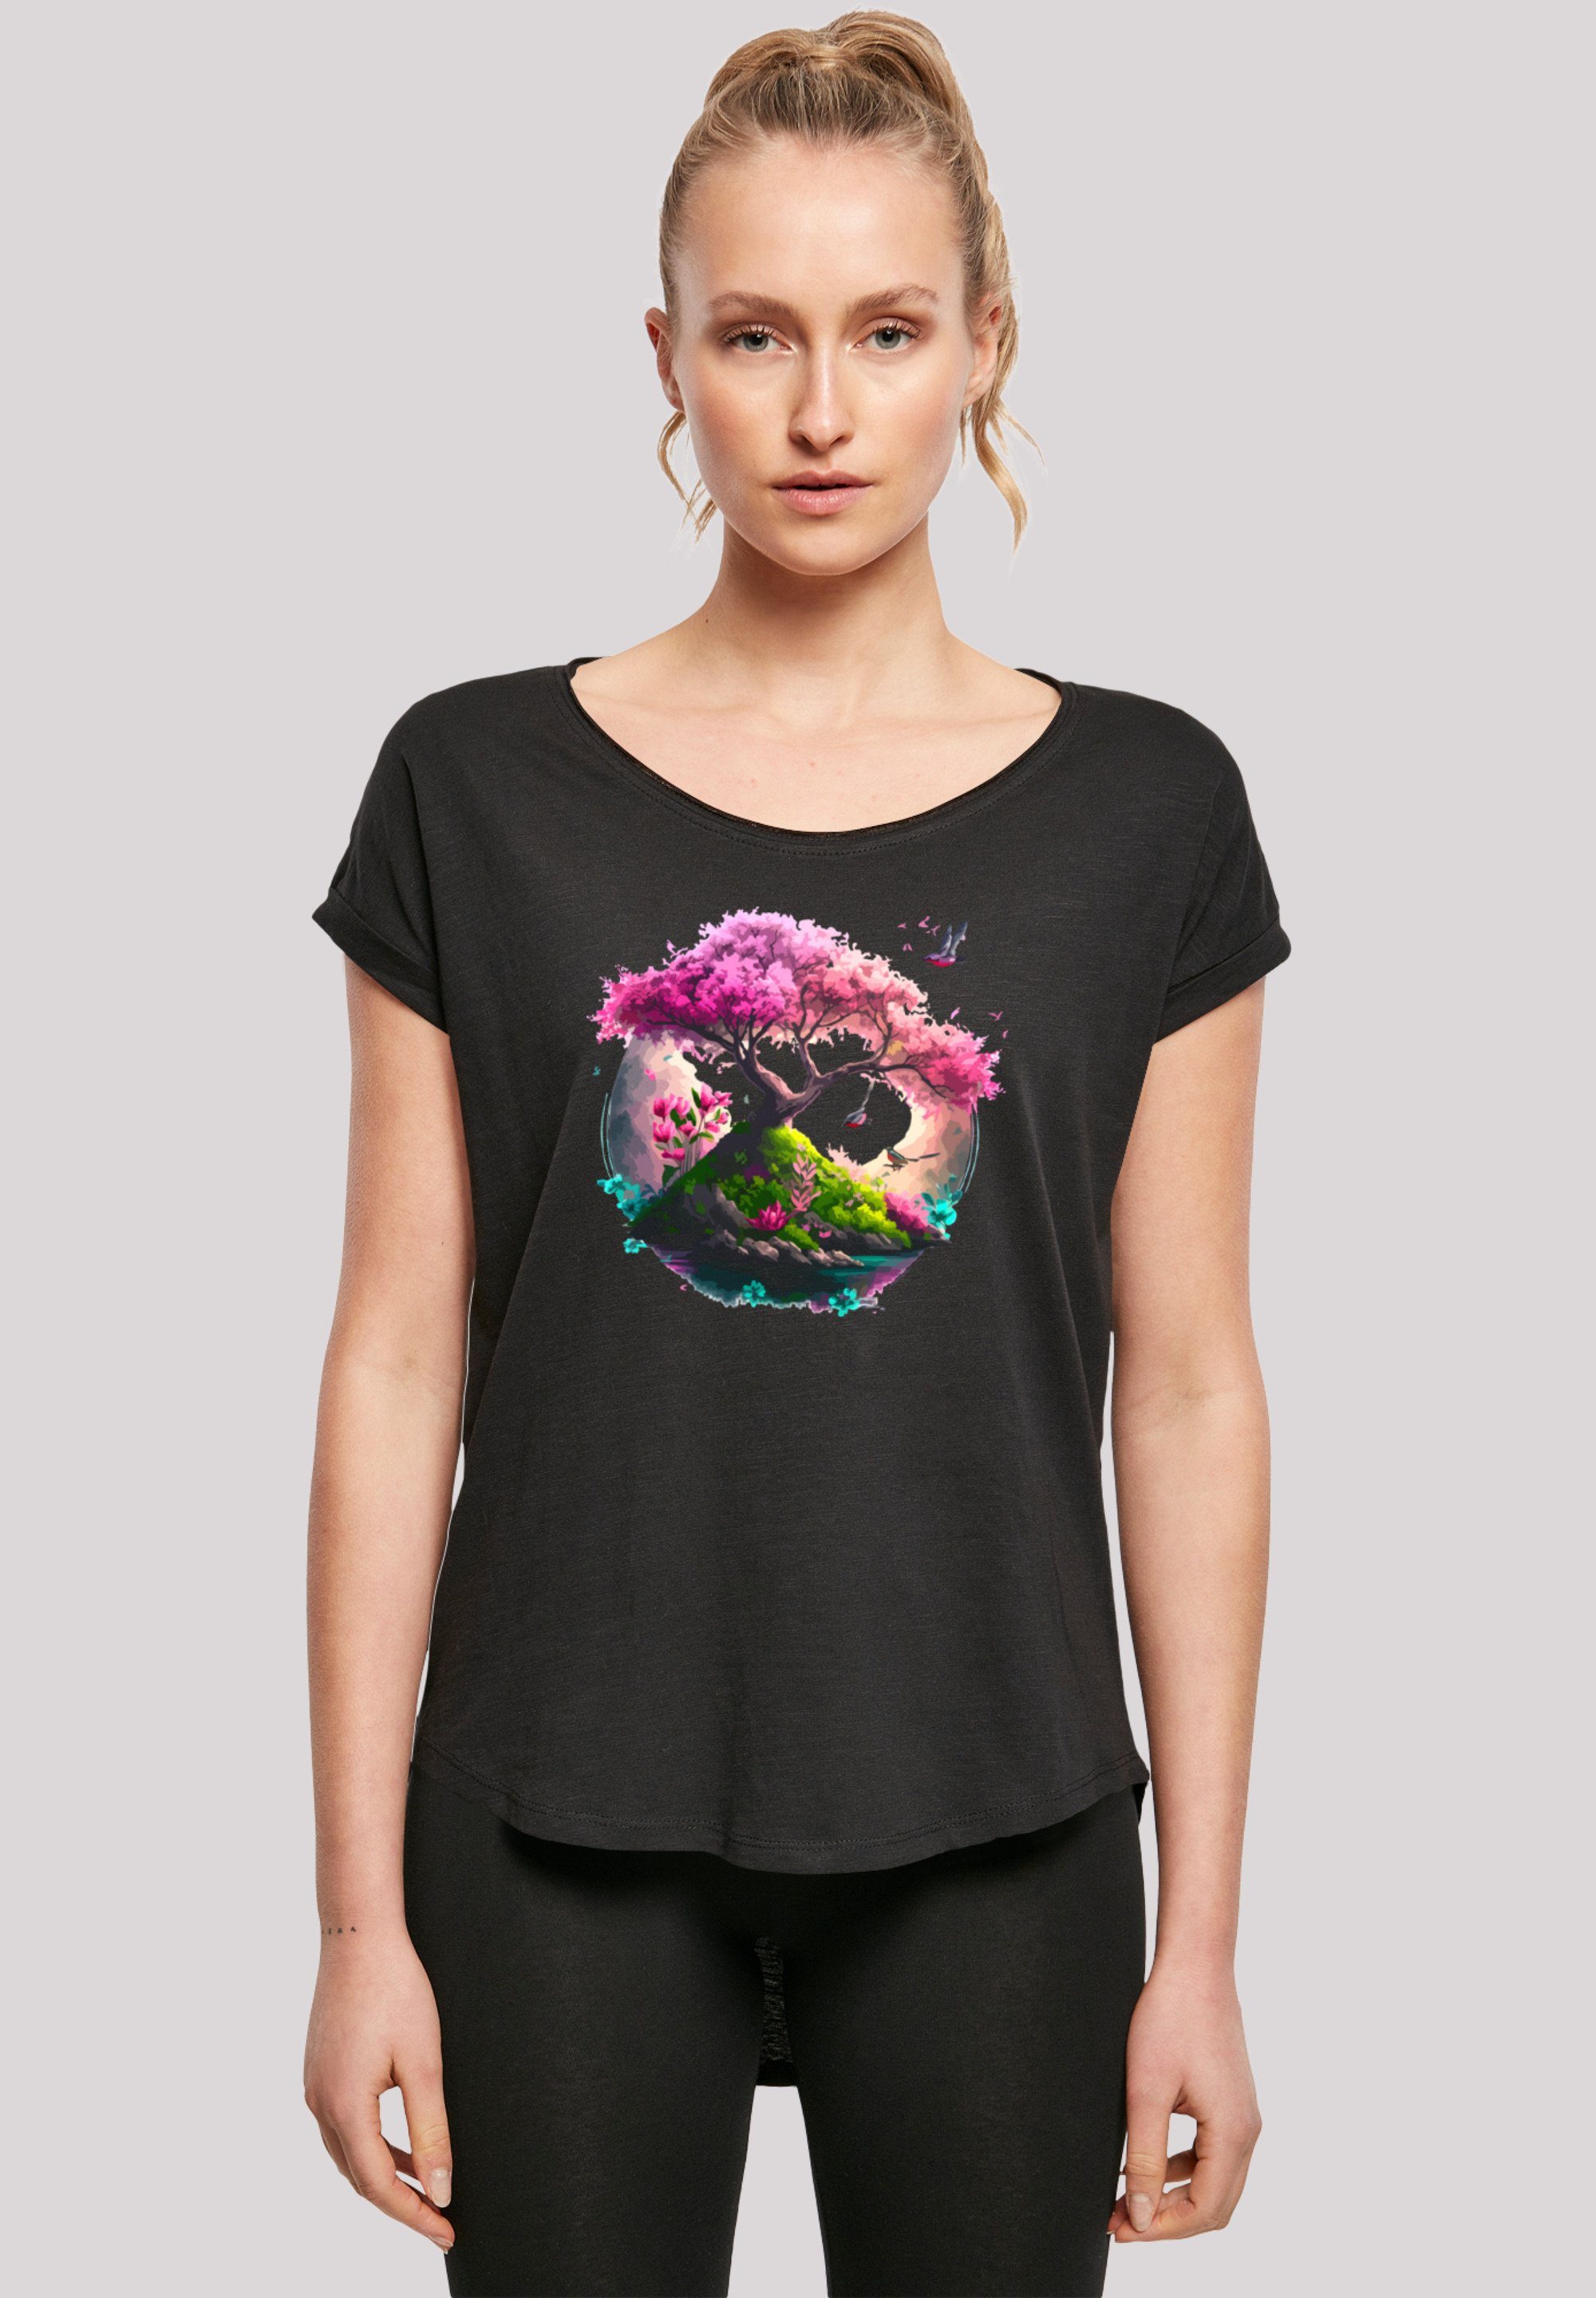 F4NT4STIC T-Shirt Kirschblüten Baum schwarz Print